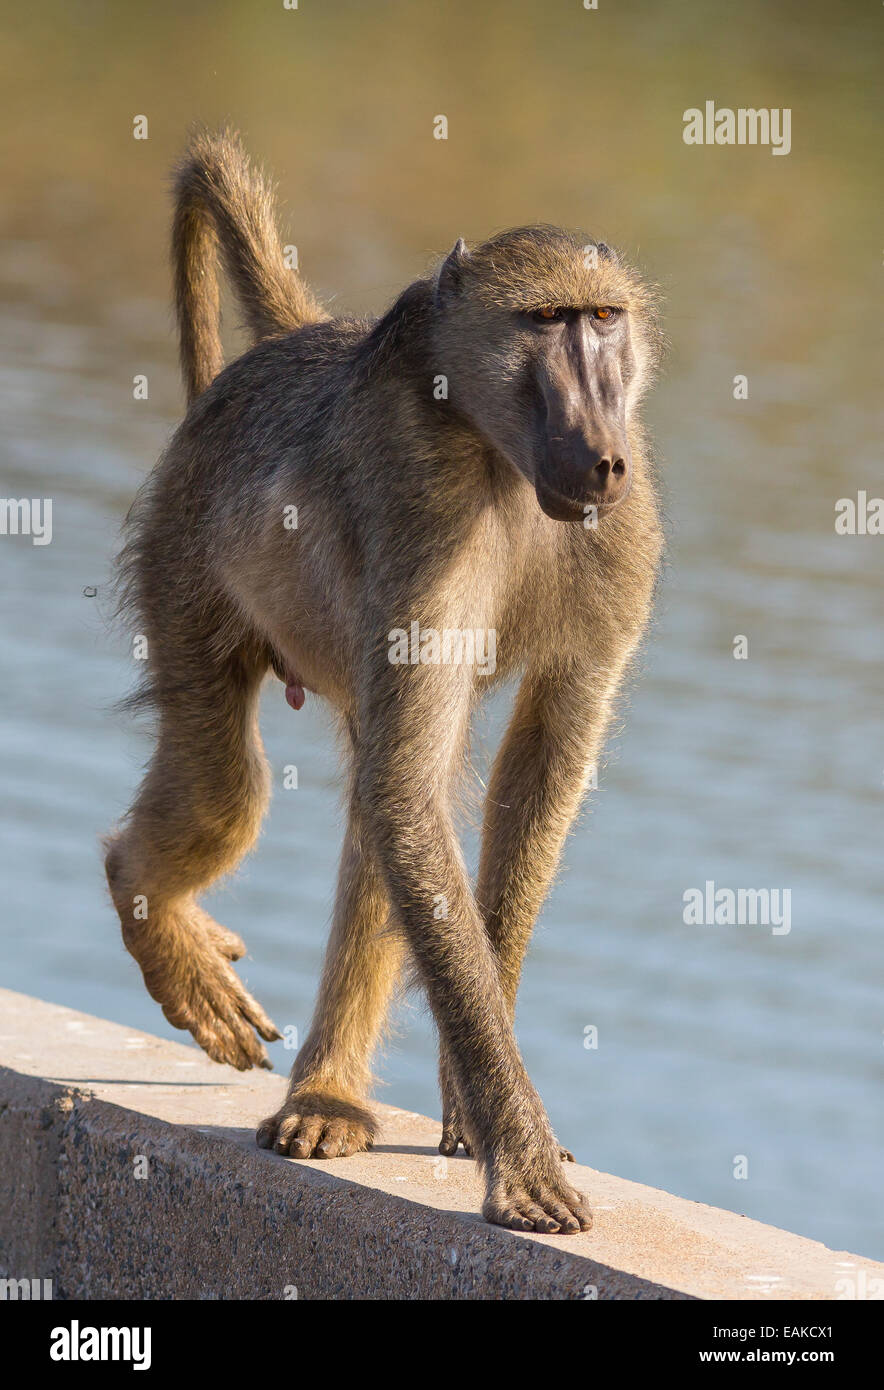 KRUGER NATIONAL PARK, SOUTH AFRICA - babouin sur pont sur la rivière. Banque D'Images